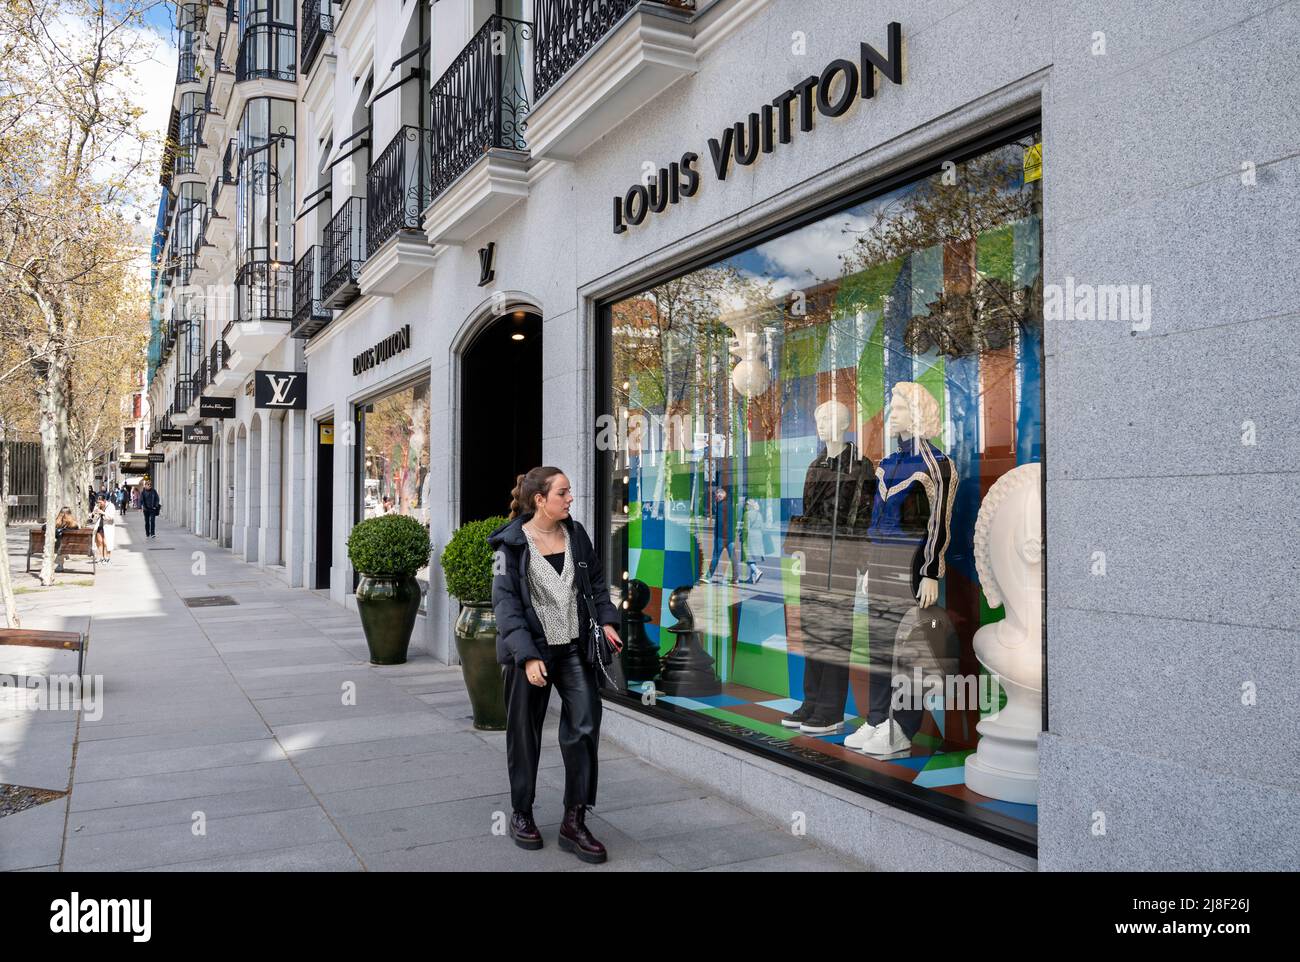 Louis Vuitton (Calle Serrano) en Madrid: 2 opiniones y 4 fotos